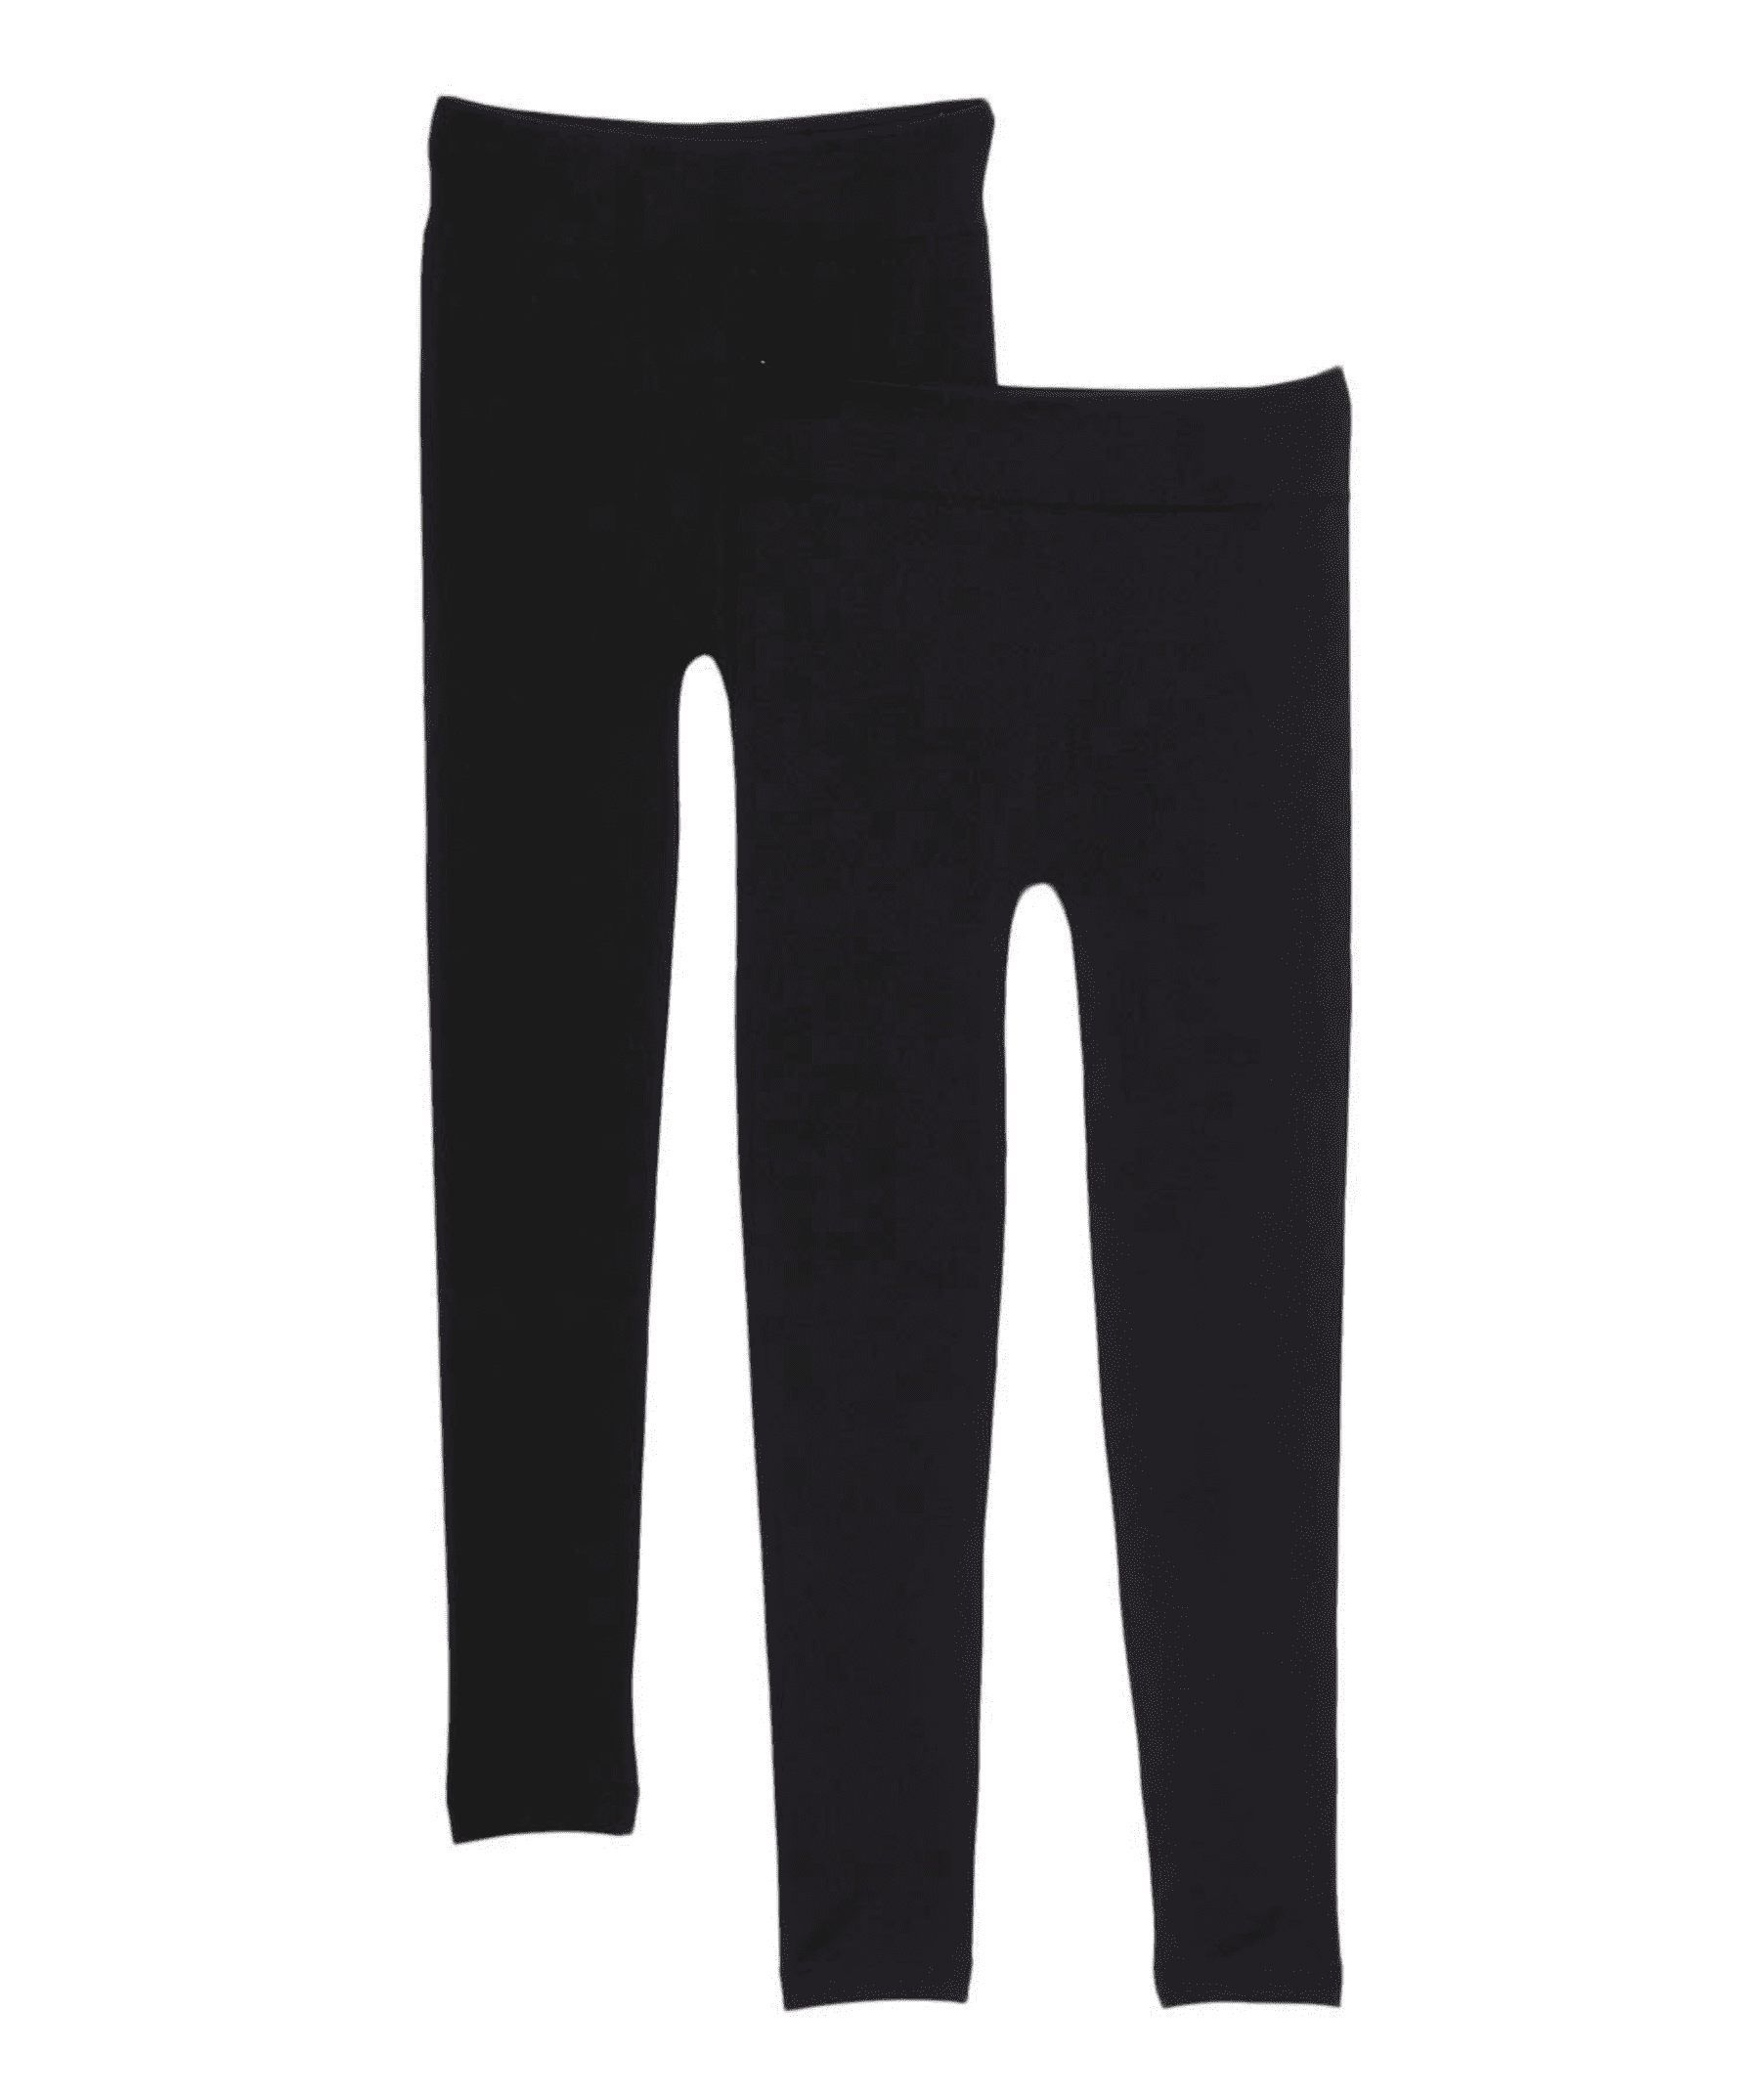 American Casual Women's Fleece Lined Leggings (Black) 